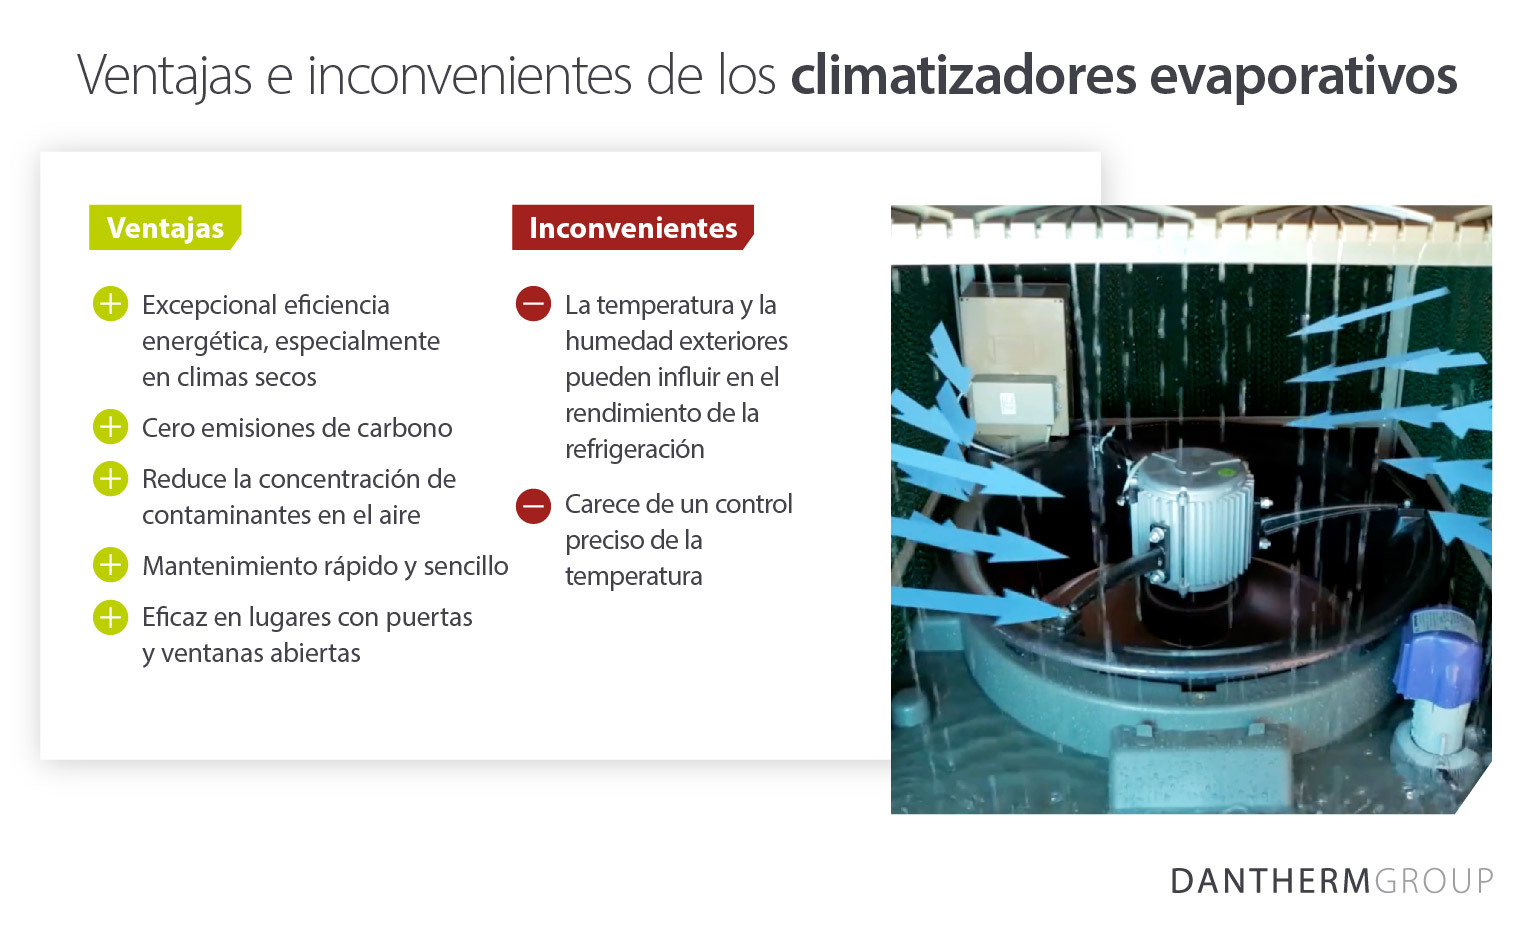 Ventajas e inconvenientes de los climatizadores evaporativos: pros y contras